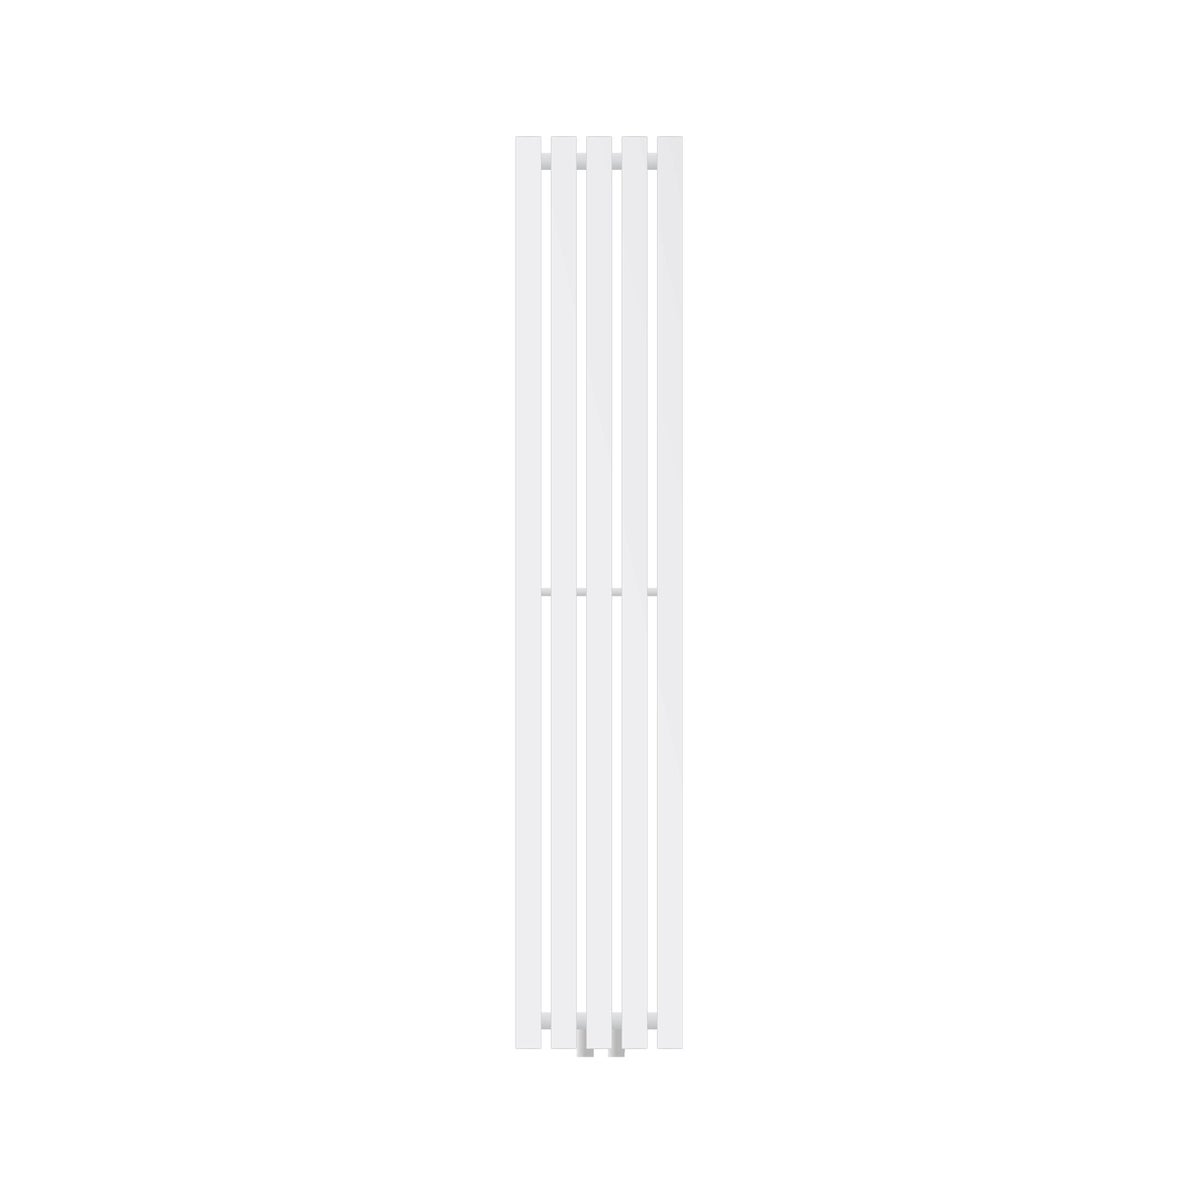 LuxeBath Designheizkörper Stella 1400 x 260 mm, Weiß, Paneelheizkörper mit Mittelanschluss, Einlagig, Flach, Vertikal, Badheizkörper Röhrenheizkörper Flachheizkörper Badezimmer Heizung Bad Wandheizung